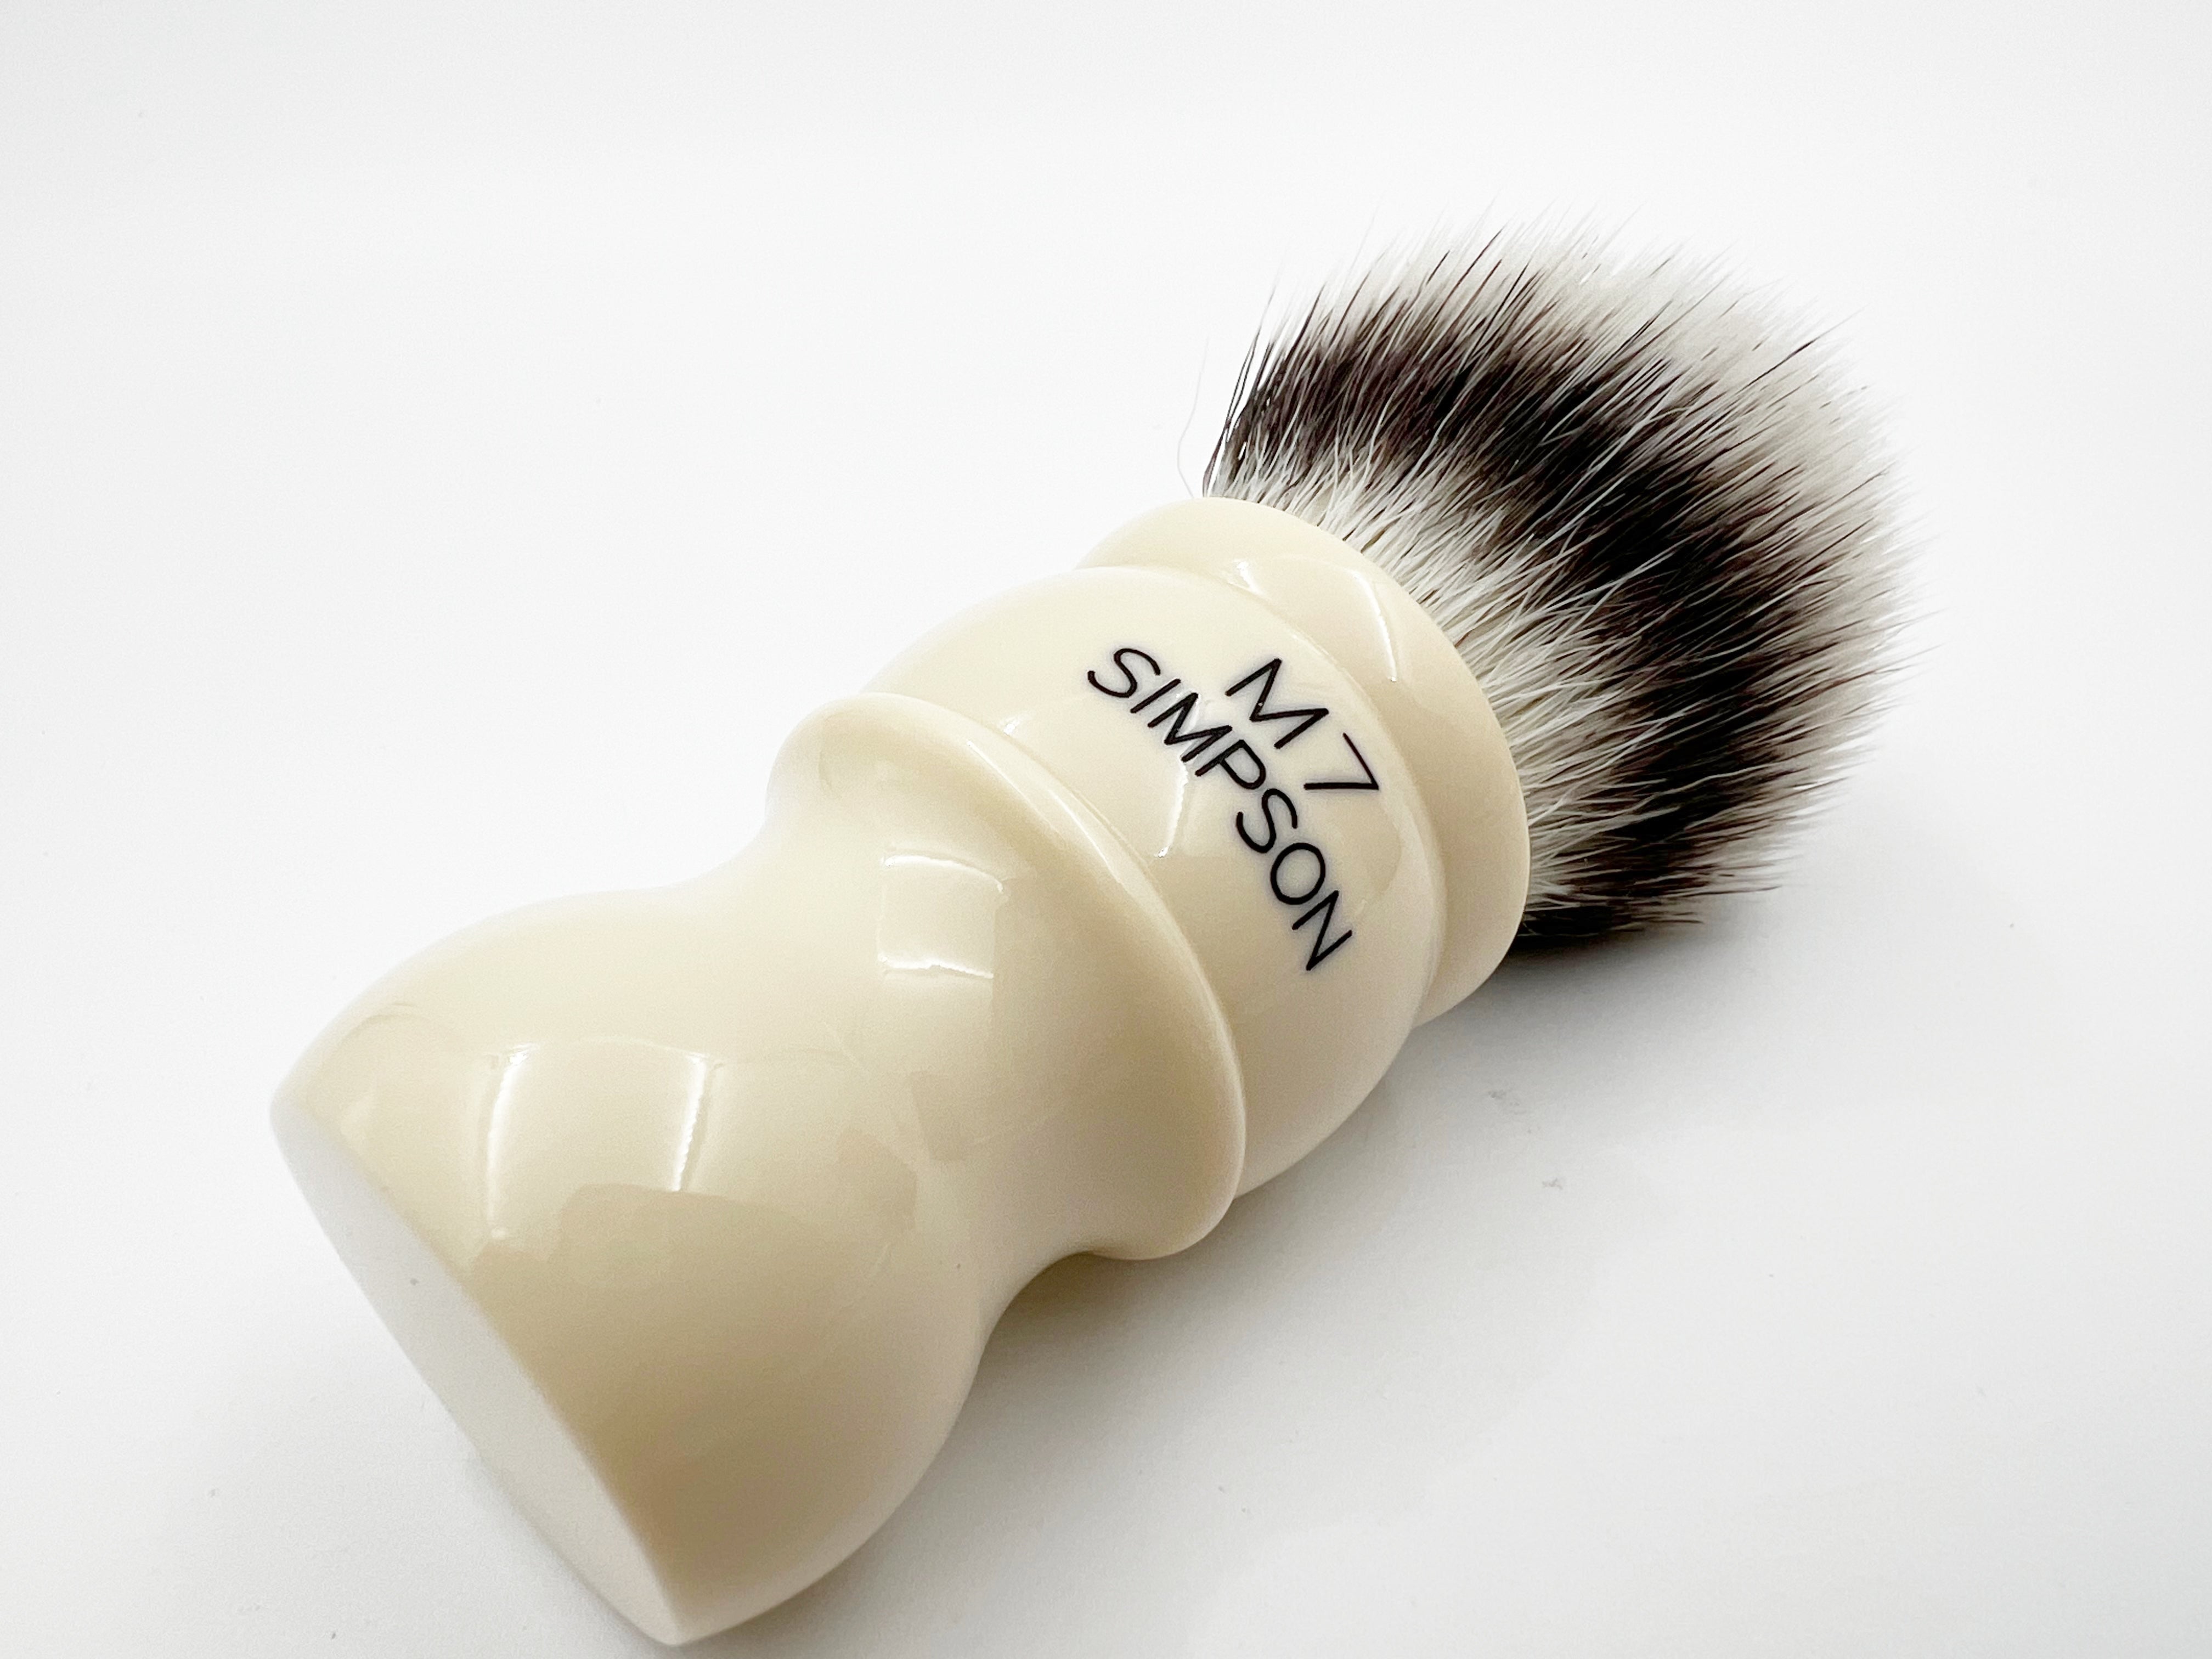 Simpson M7 Platinum Synthetic Bristle Shaving Brush